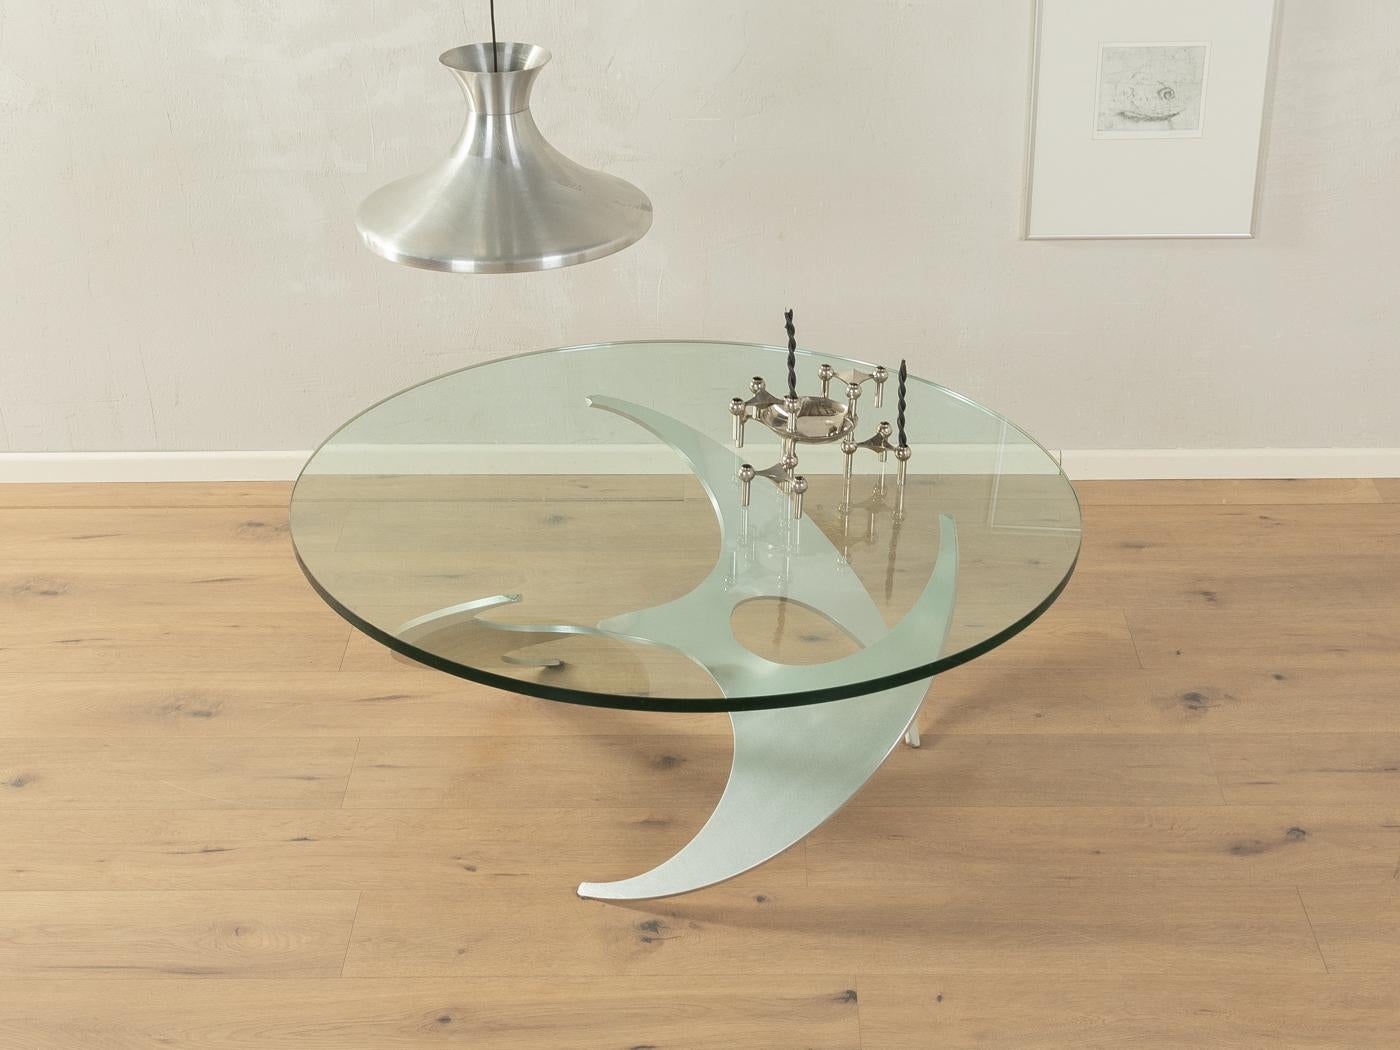 Table basse sculpturale en forme d'hélice, réalisée par Knut Hesterberg pour Ronald Schmitt dans les années 1960. Plateau en verre de 19 mm d'épaisseur sur une structure en aluminium de haute qualité.
Caractéristiques de qualité :

    très bon